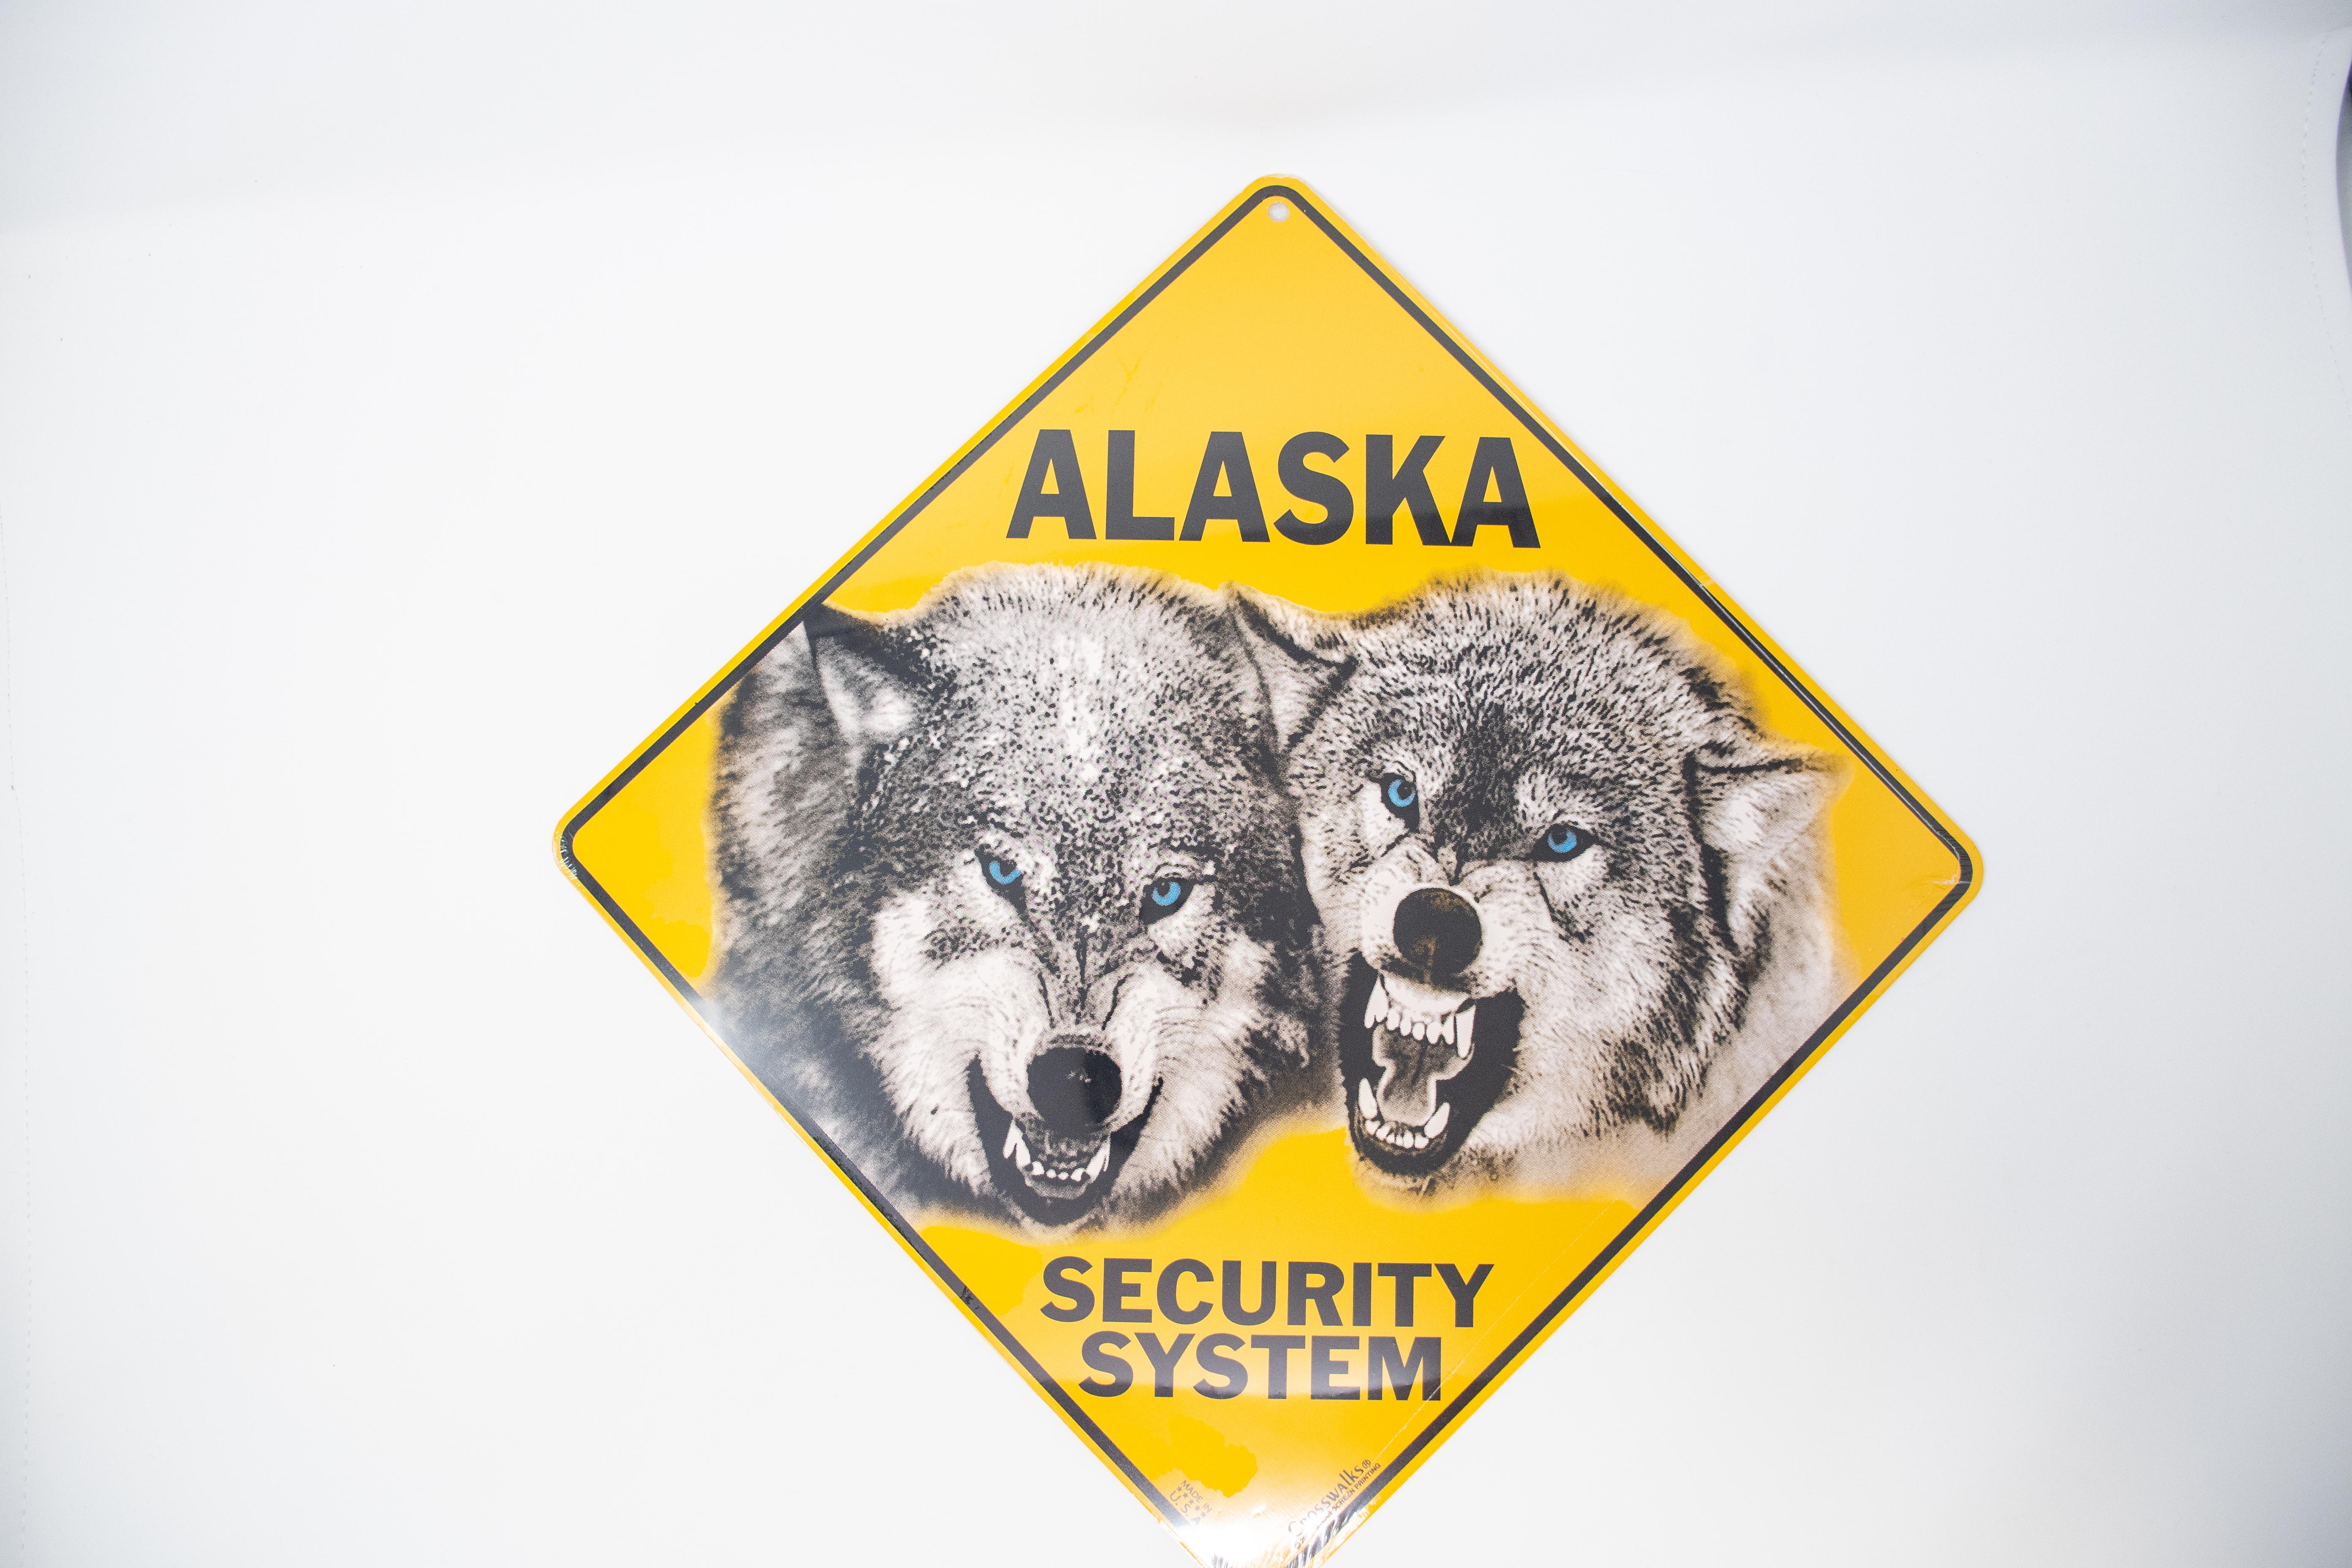  Sign - Alaska Security System